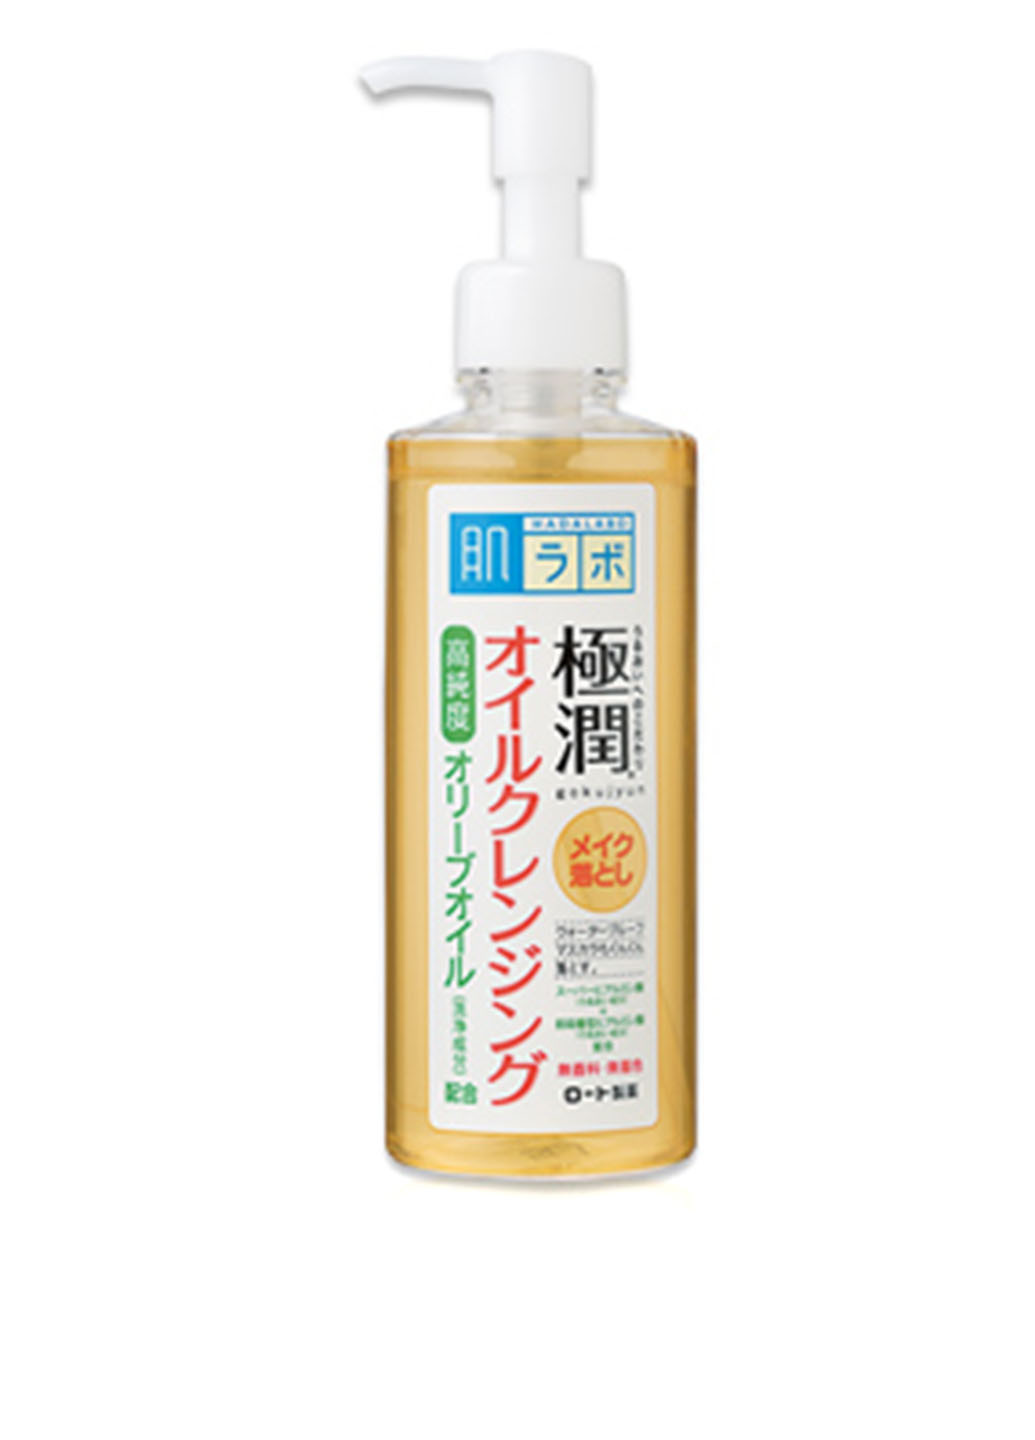 Масло гидрофильное с гиалуроновой кислотой Gokujyun Cleansing Oil, 200 мл Hada Labo (30873706)